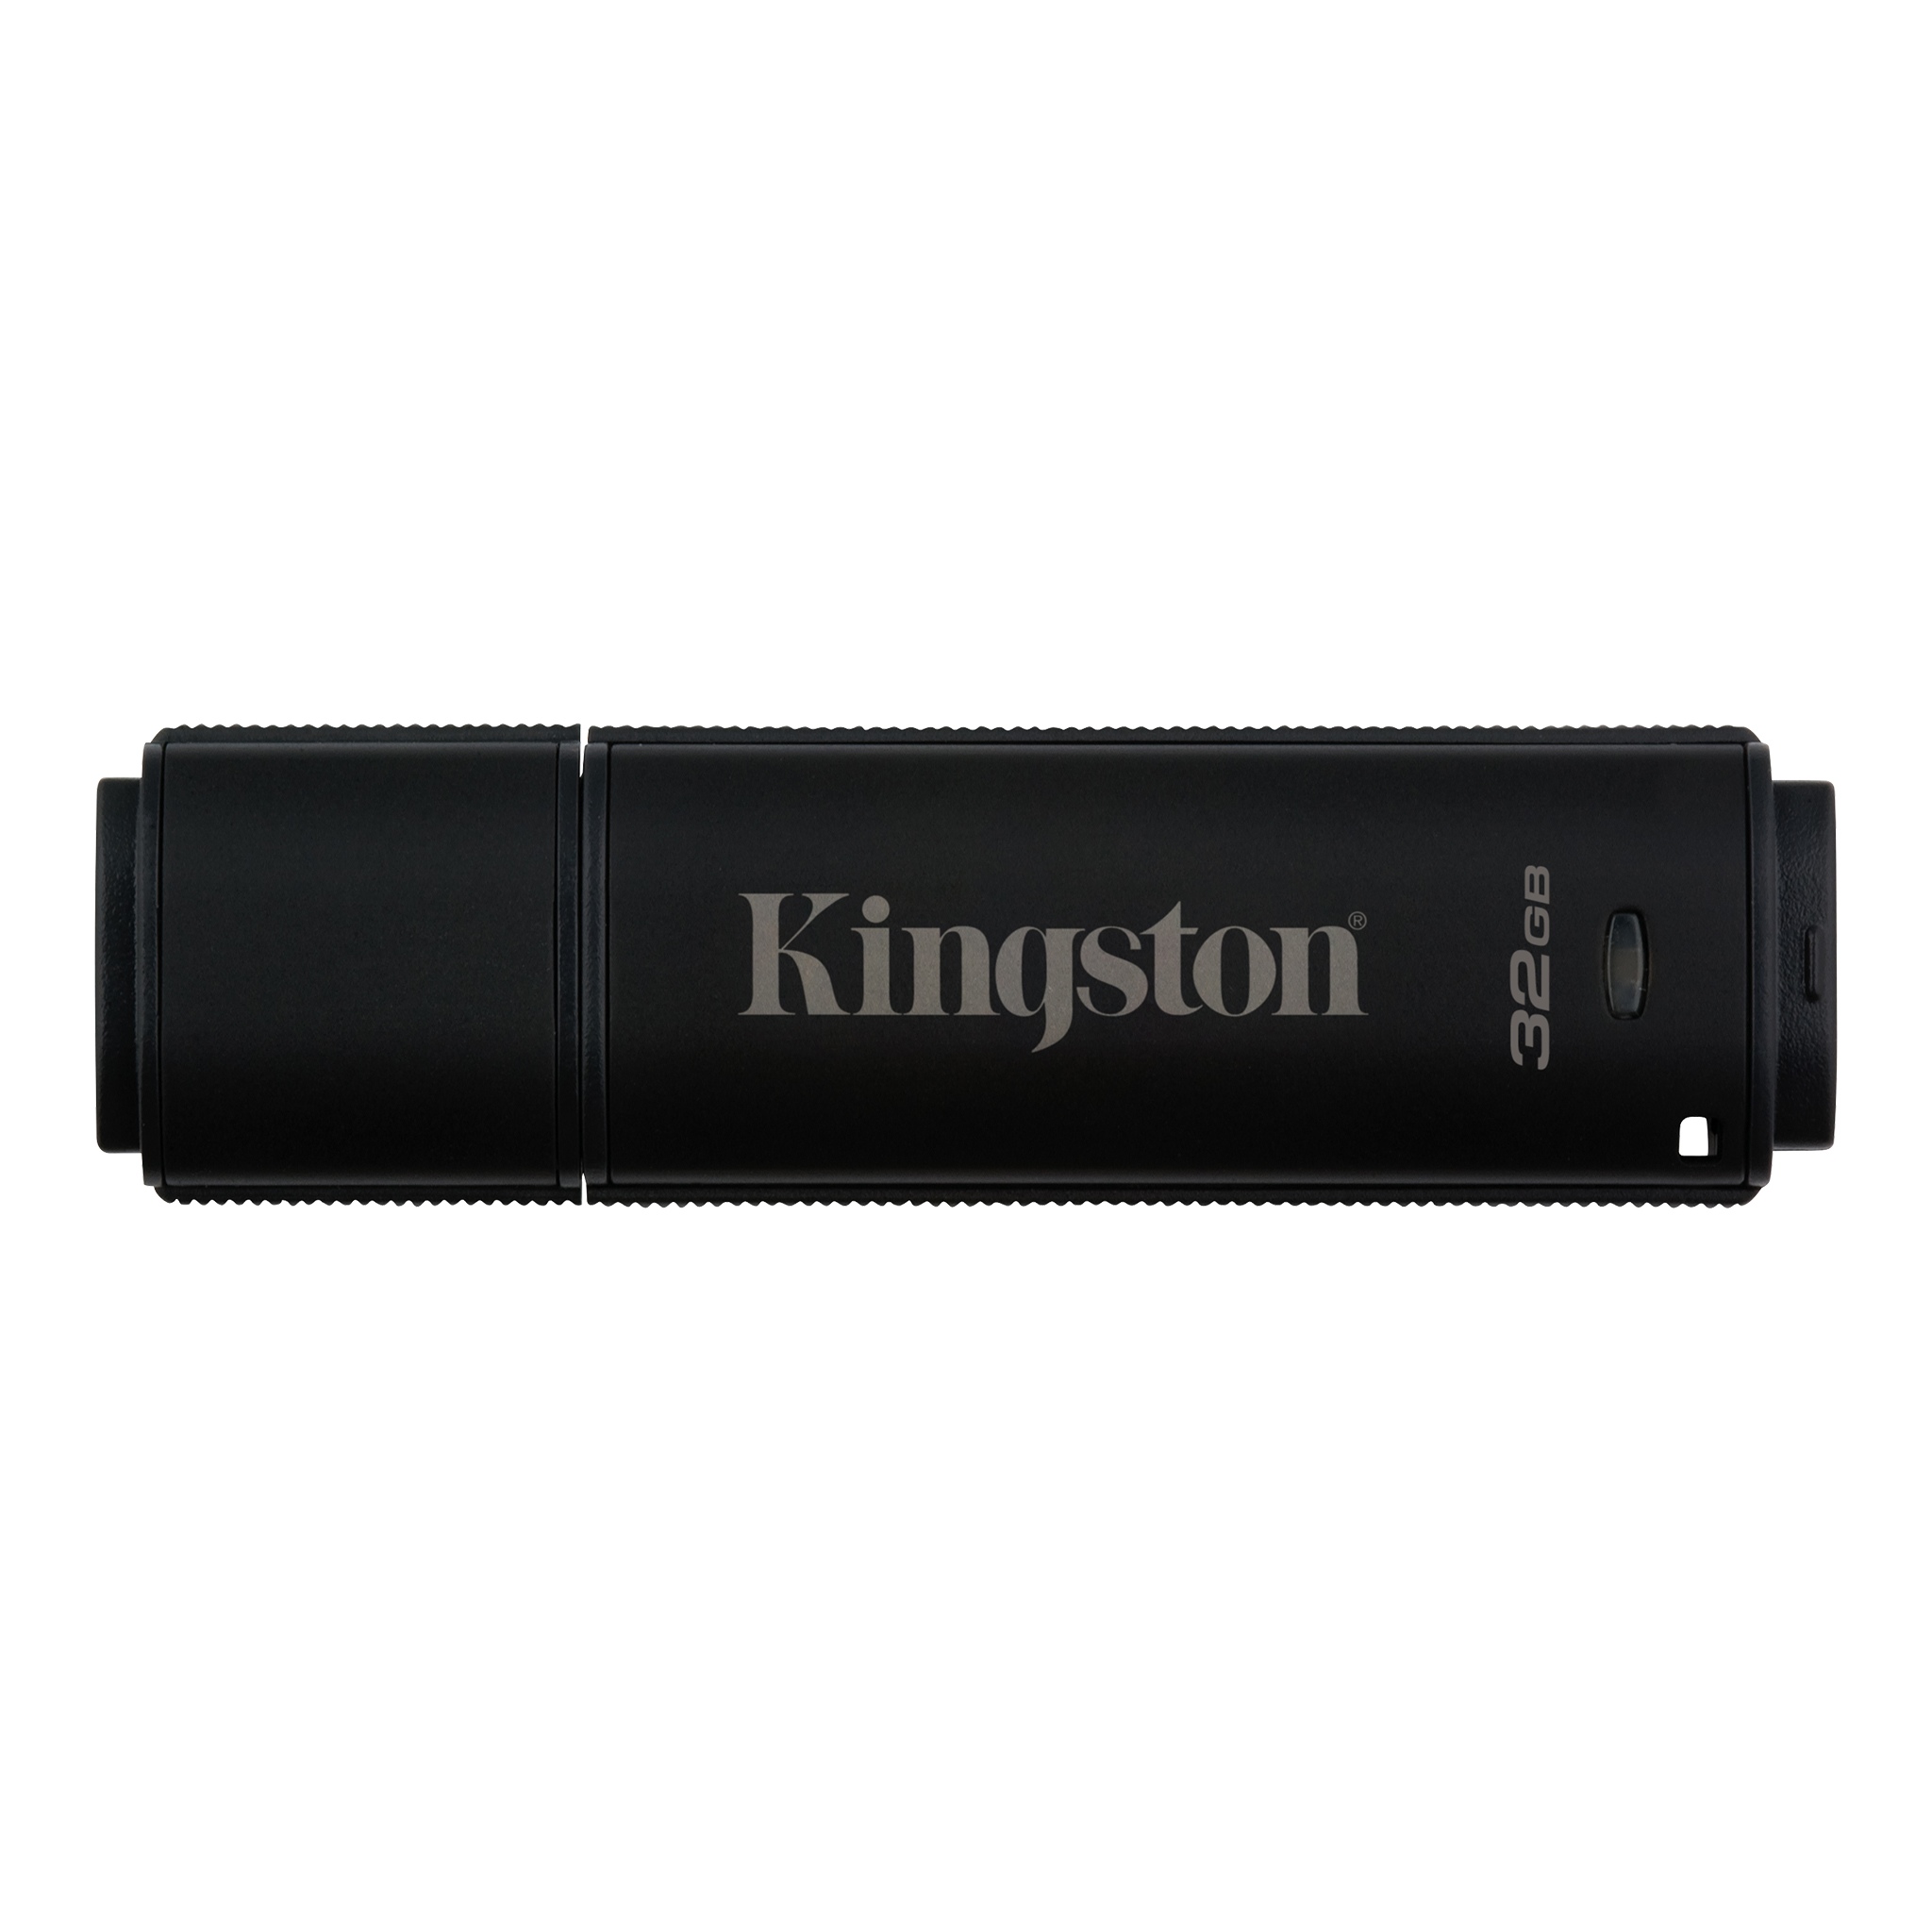 Flash drive kingston datatraveler 4000g2 32gb usb 3.0